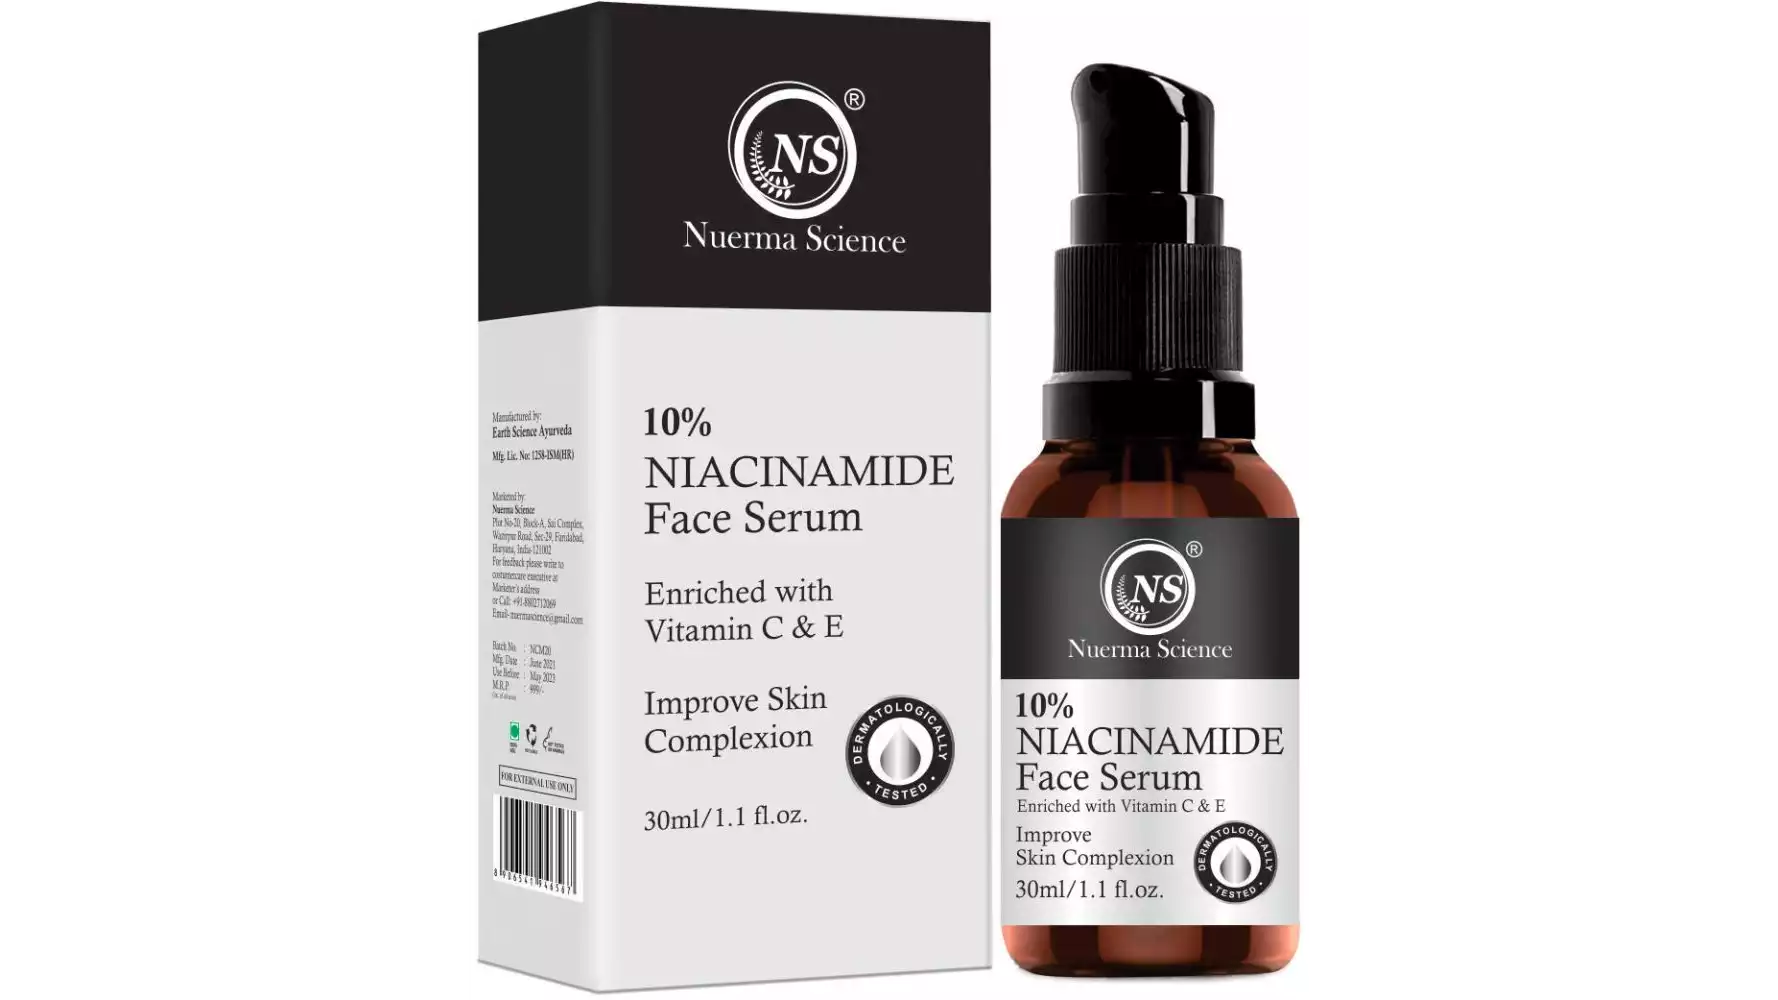 Nuerma Science 10% Niacinamide Face Serum (30ml)